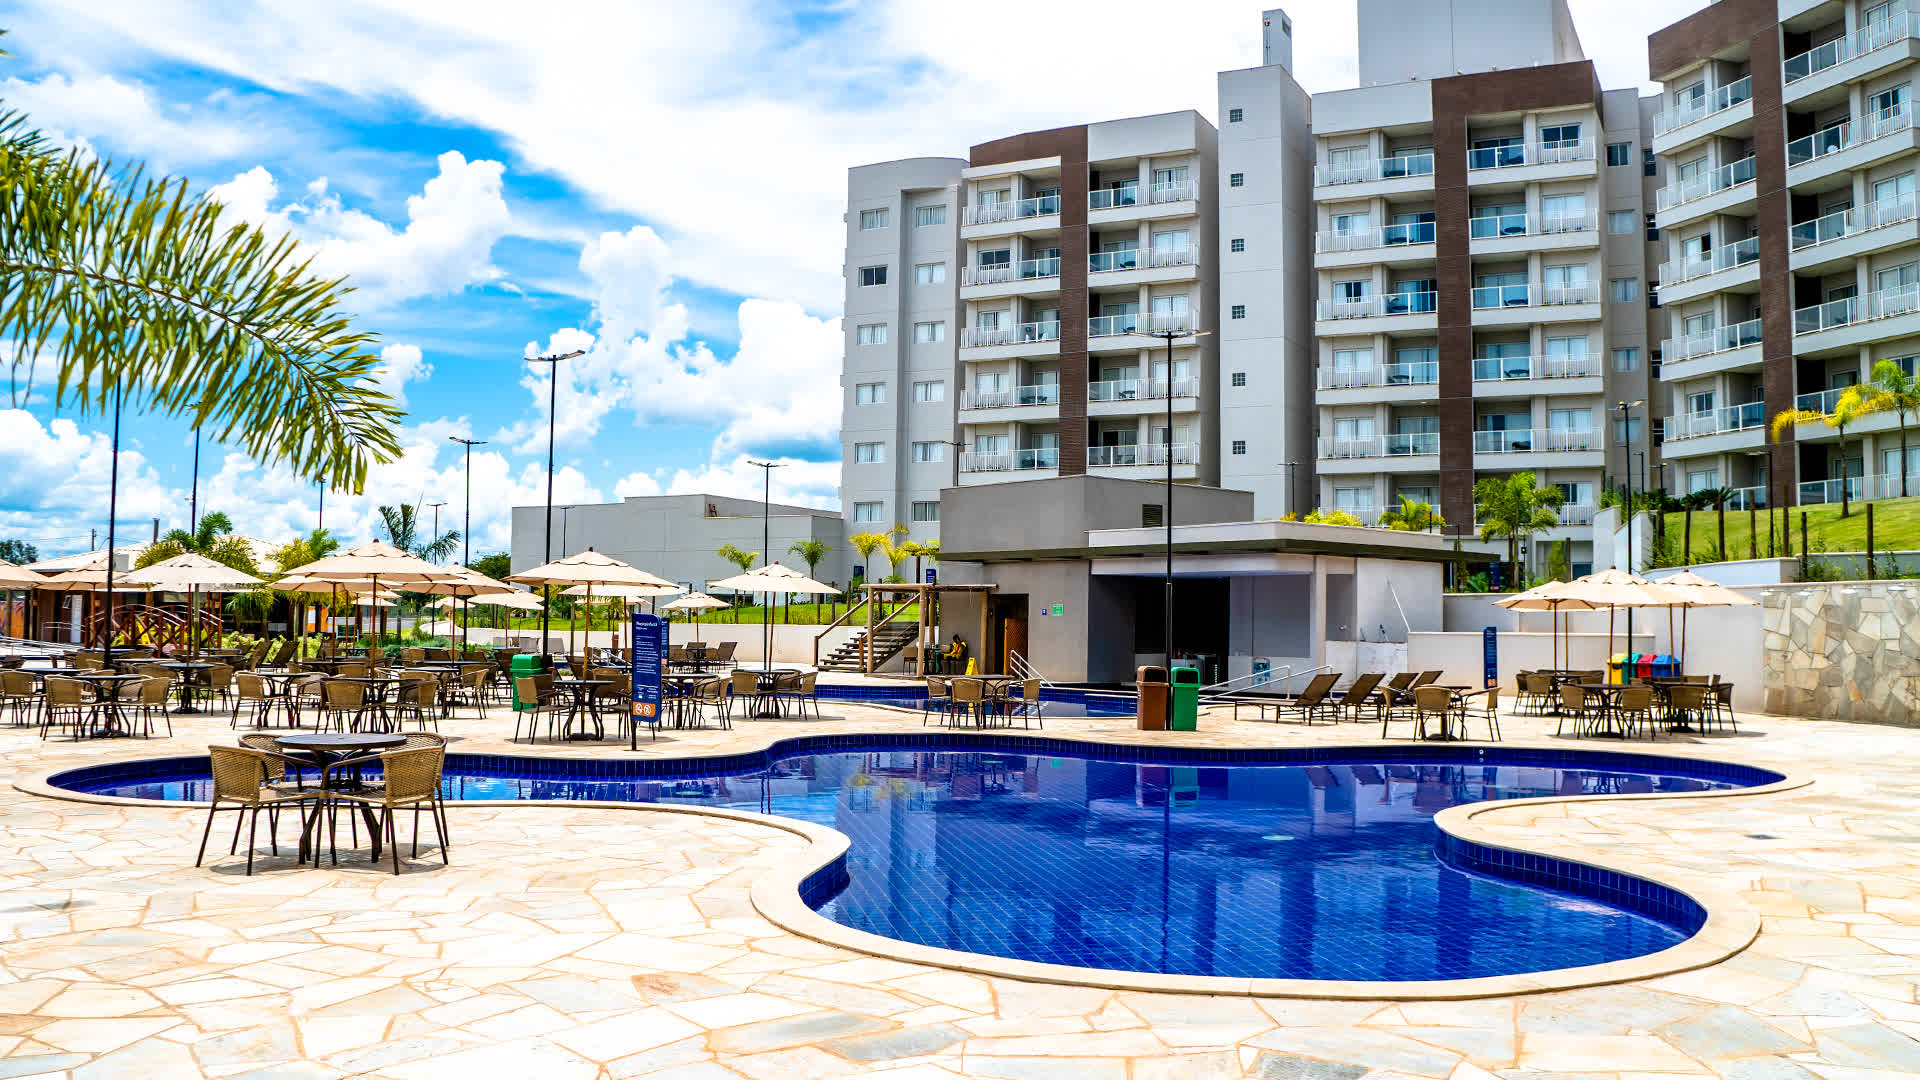 Hospedagem Grupo Lagoa Quentes Parques e Hotéis em Caldas Novas Goiás